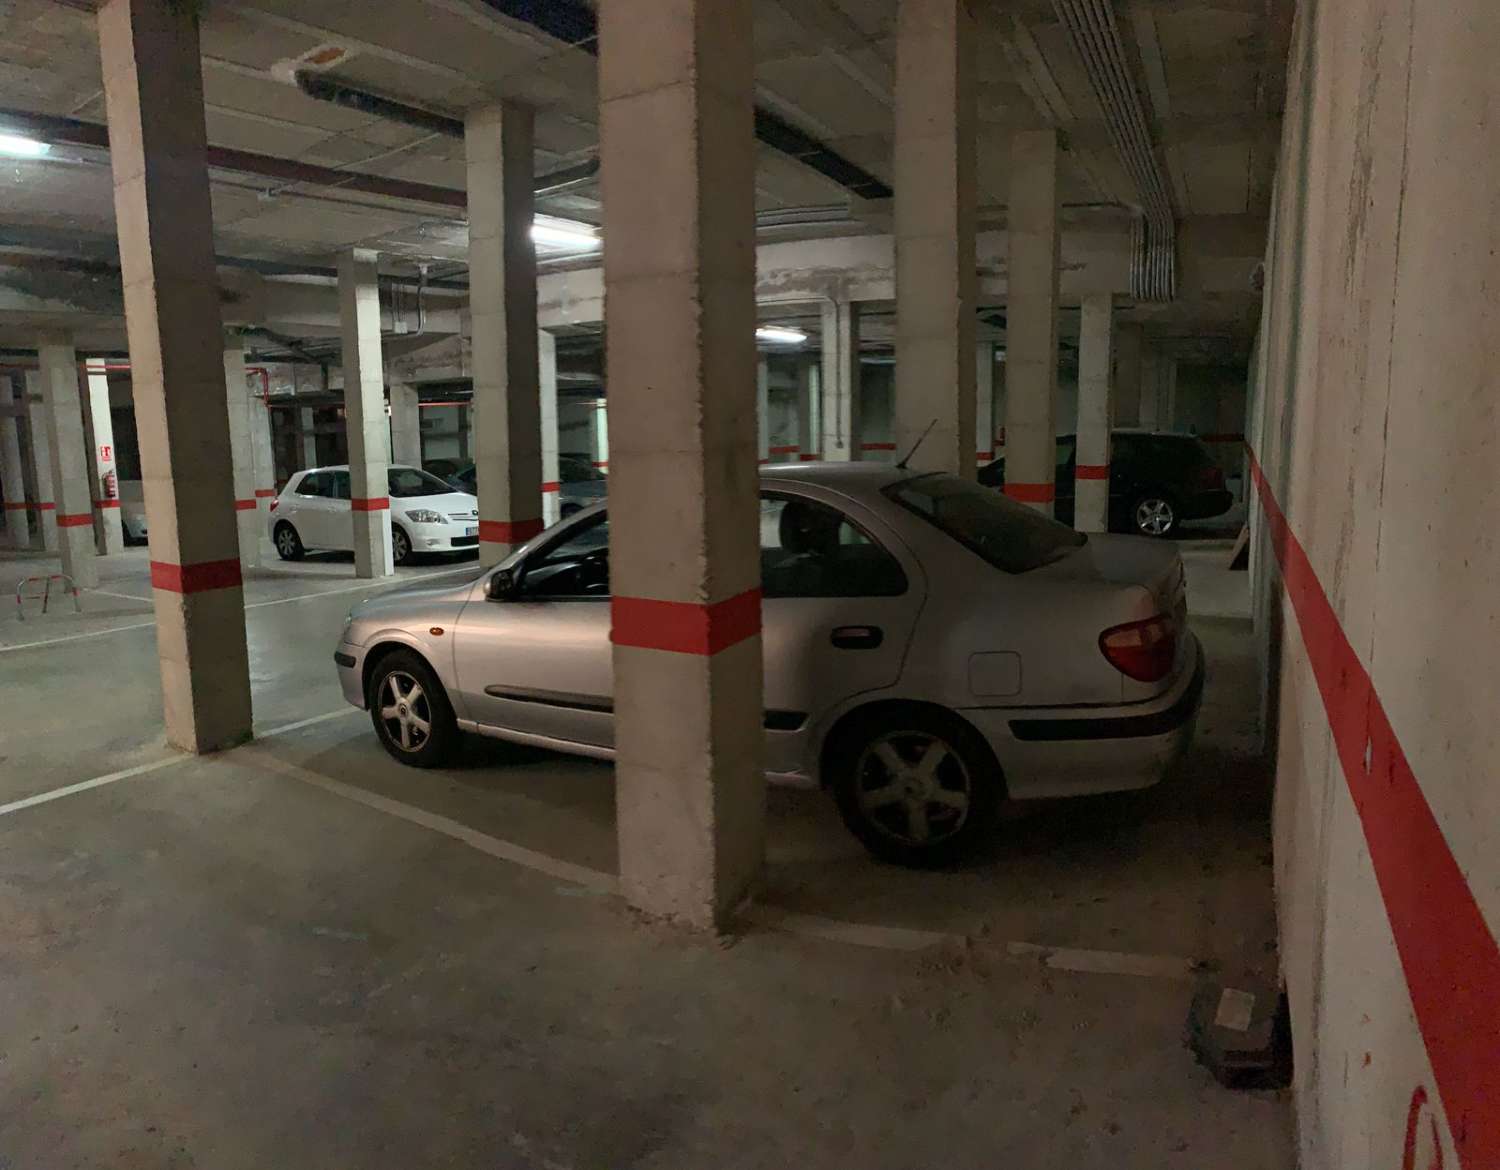 Underground parking space